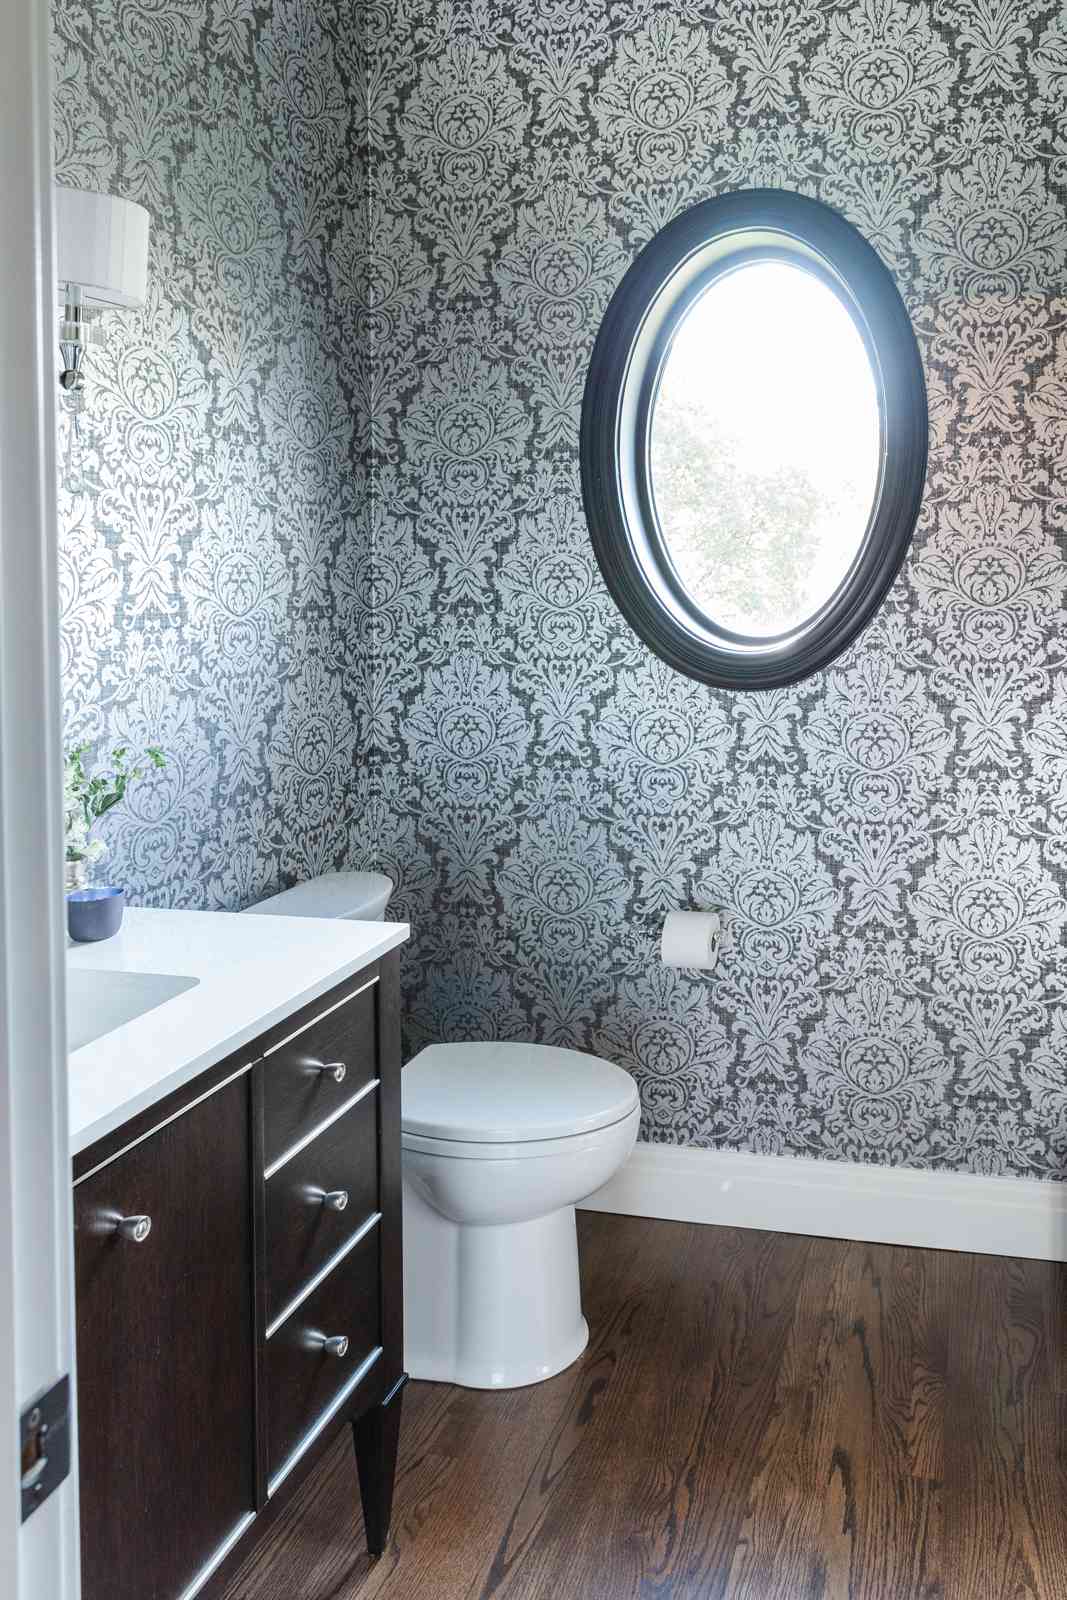 Une petite salle de bains avec du papier peint damassé